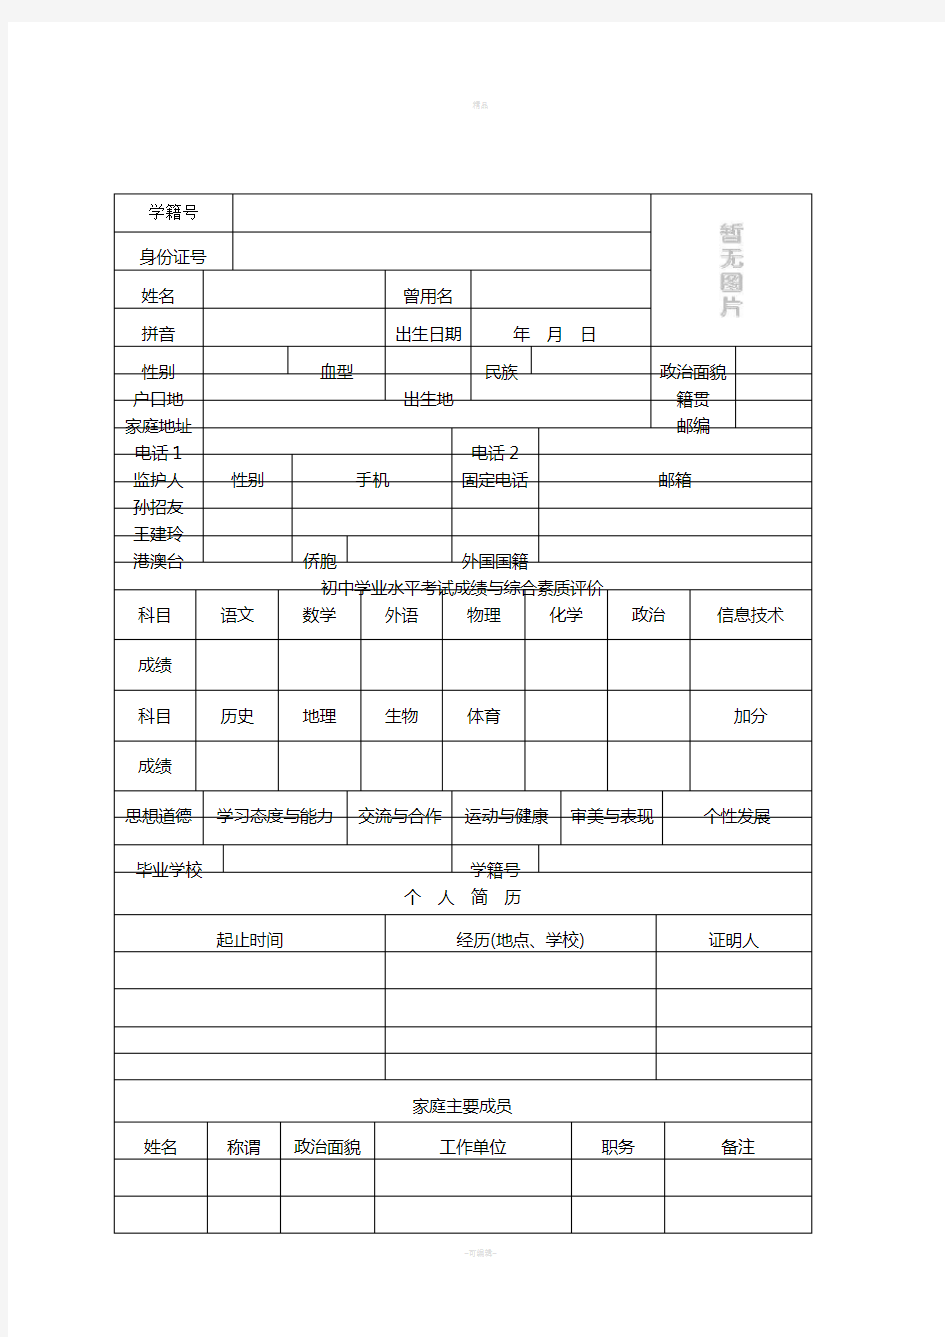 云南省普通高中学生成长记录手册(完整版)